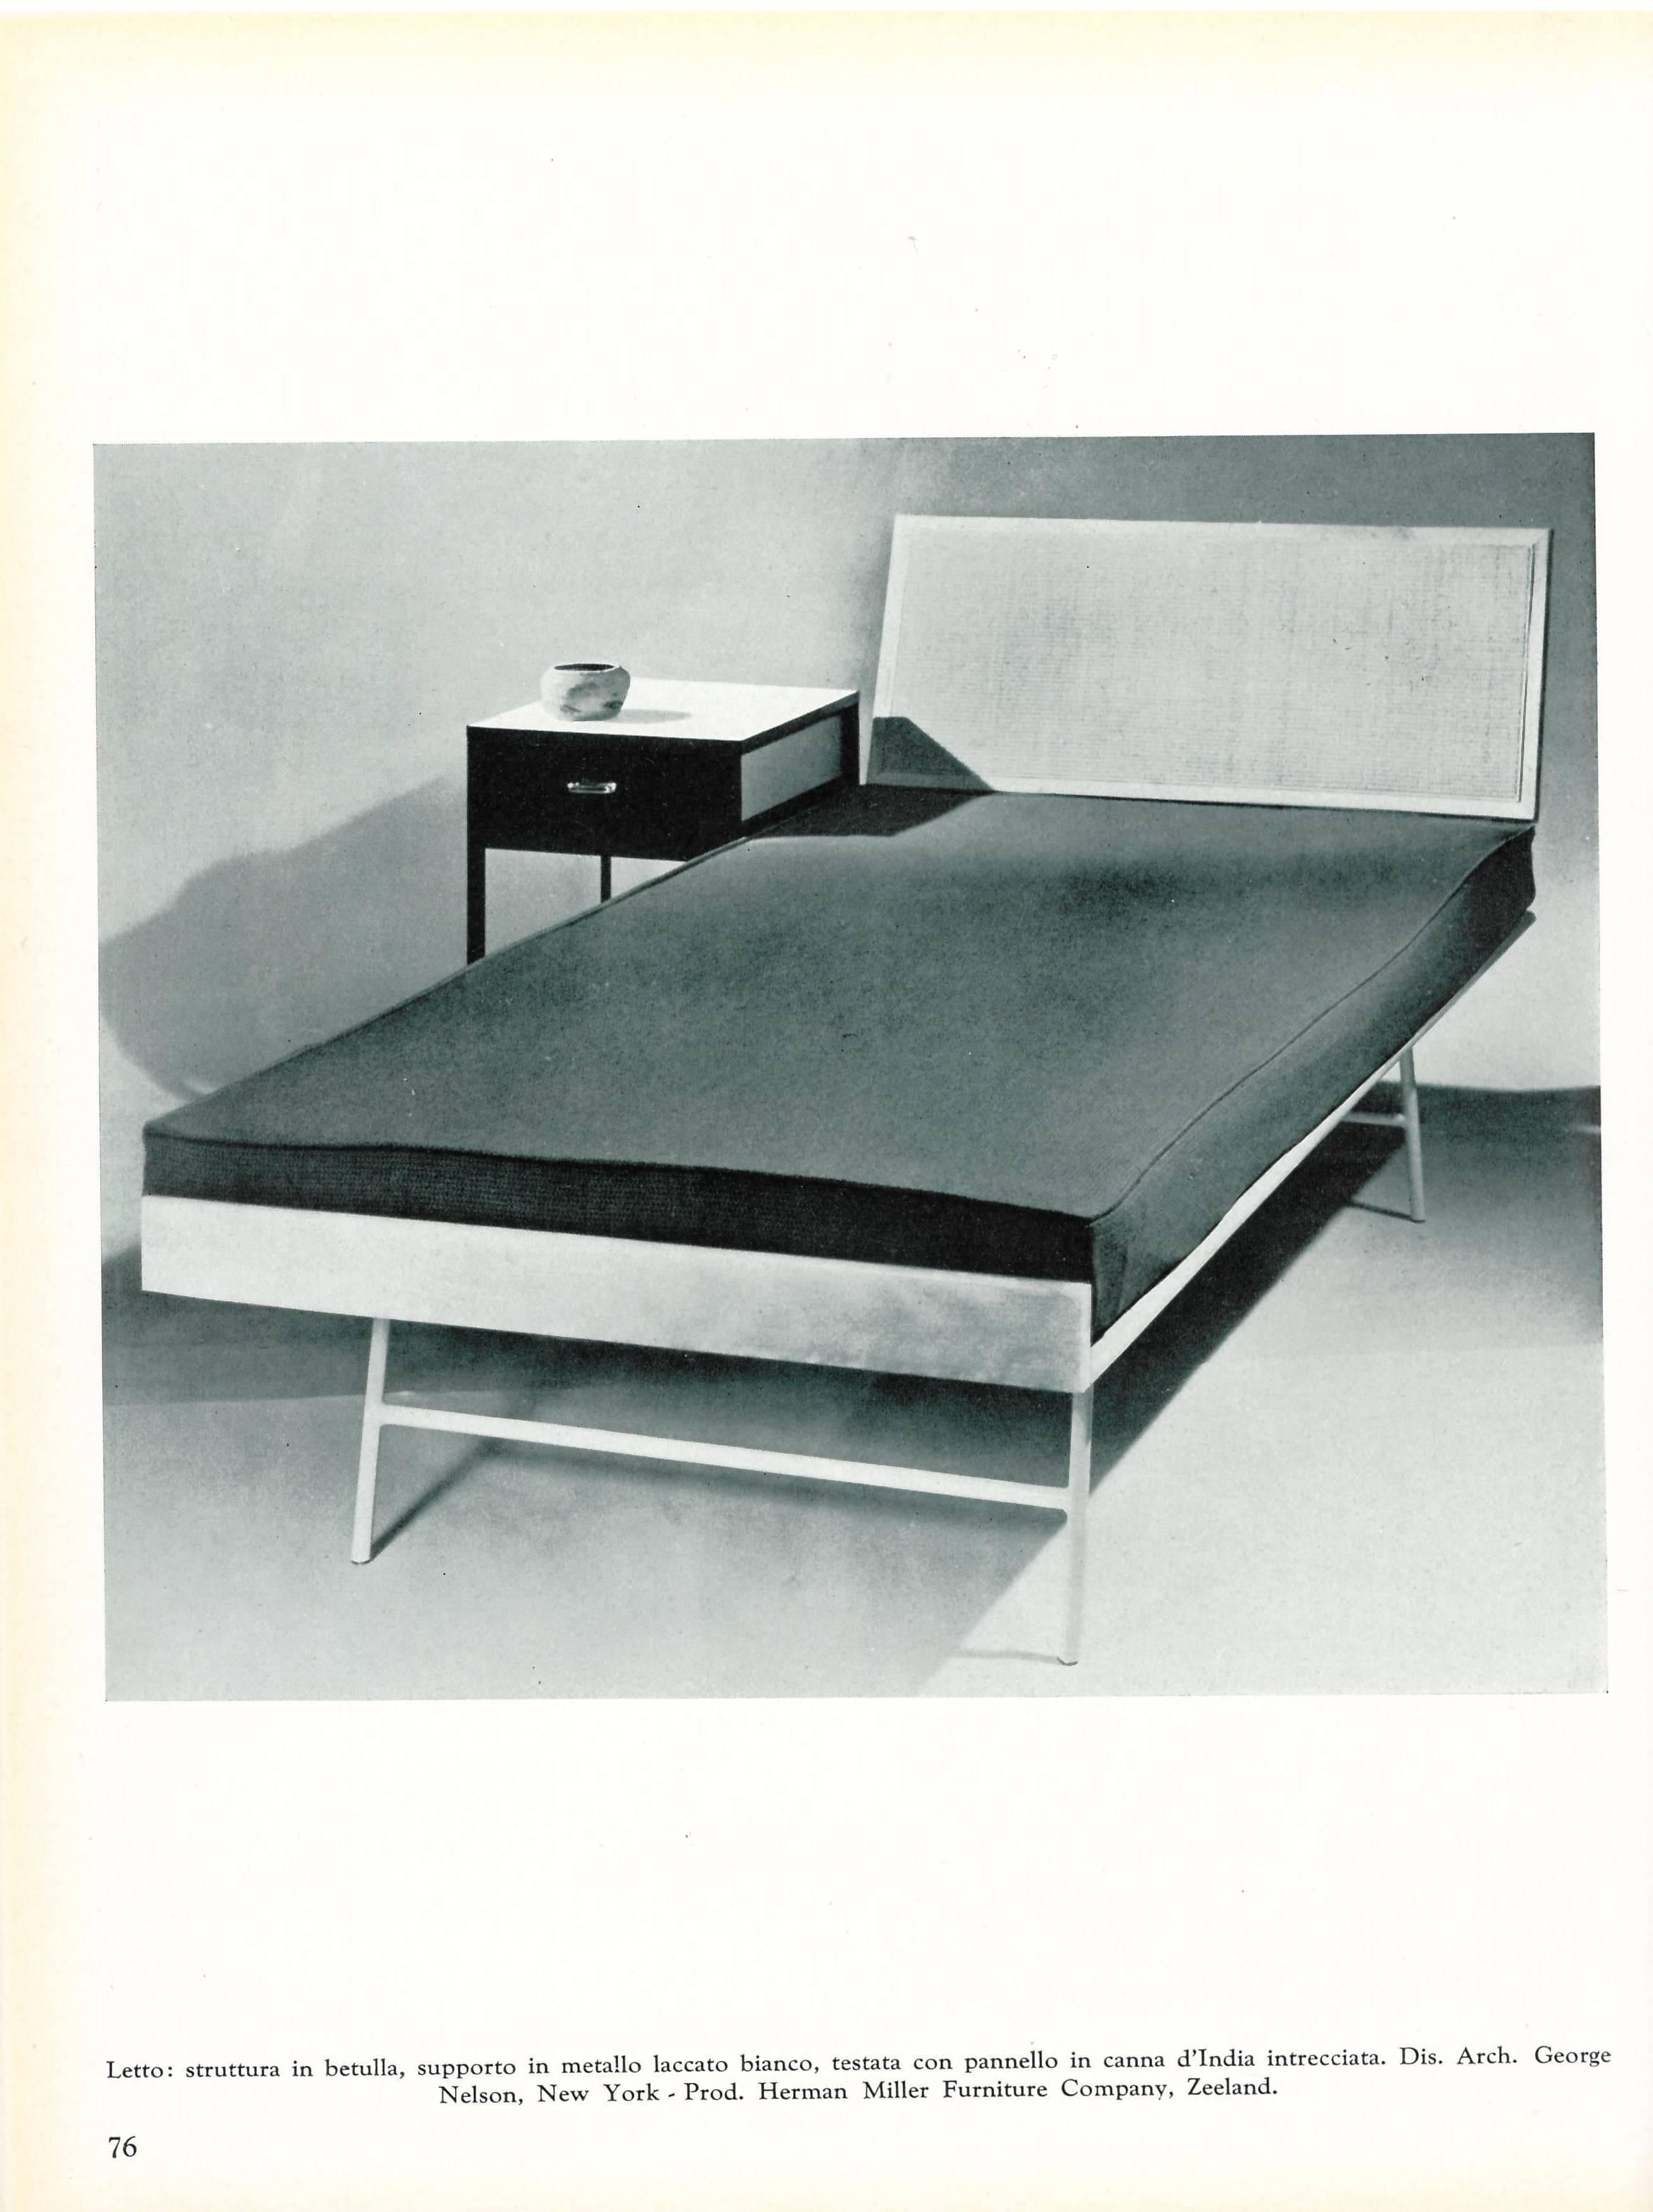 Ein gebundenes Buch aus dem Jahr 1956 mit vielen Beispielen von Möbeln aus der Jahrhundertmitte, die von einigen der berühmtesten Designer dieser Zeit entworfen und hergestellt wurden. Mit dabei sind unter anderem Gio Ponti, Herman Miller, Finn